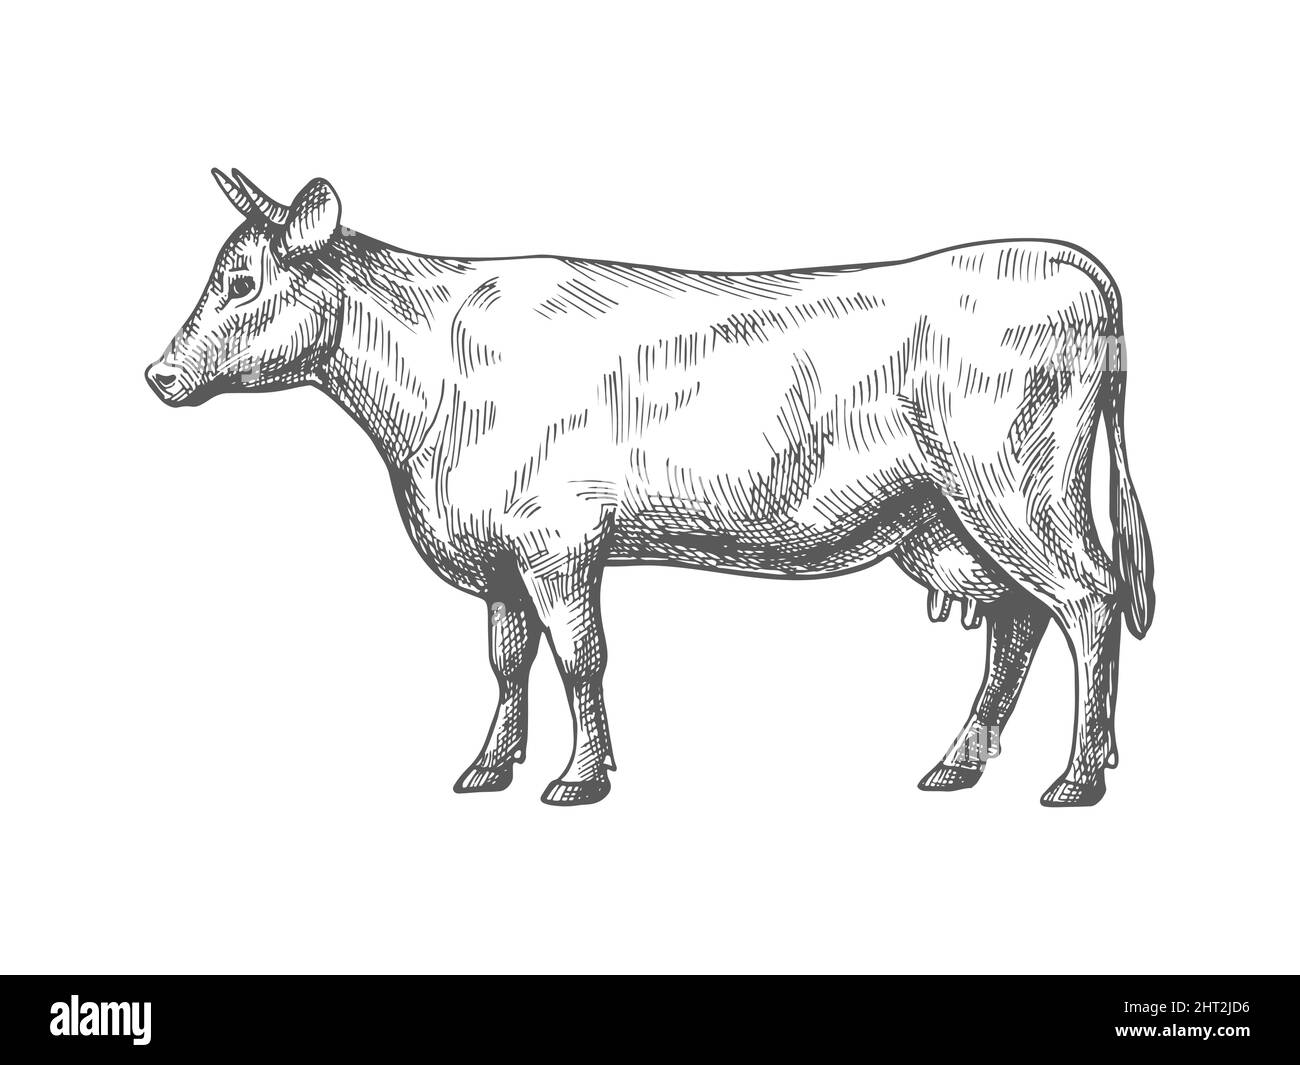 Schizzo di una mucca. Illustrazione vettoriale vintage di disegno a mano di mucca di schizzo isolato su sfondo bianco. Illustrazione Vettoriale